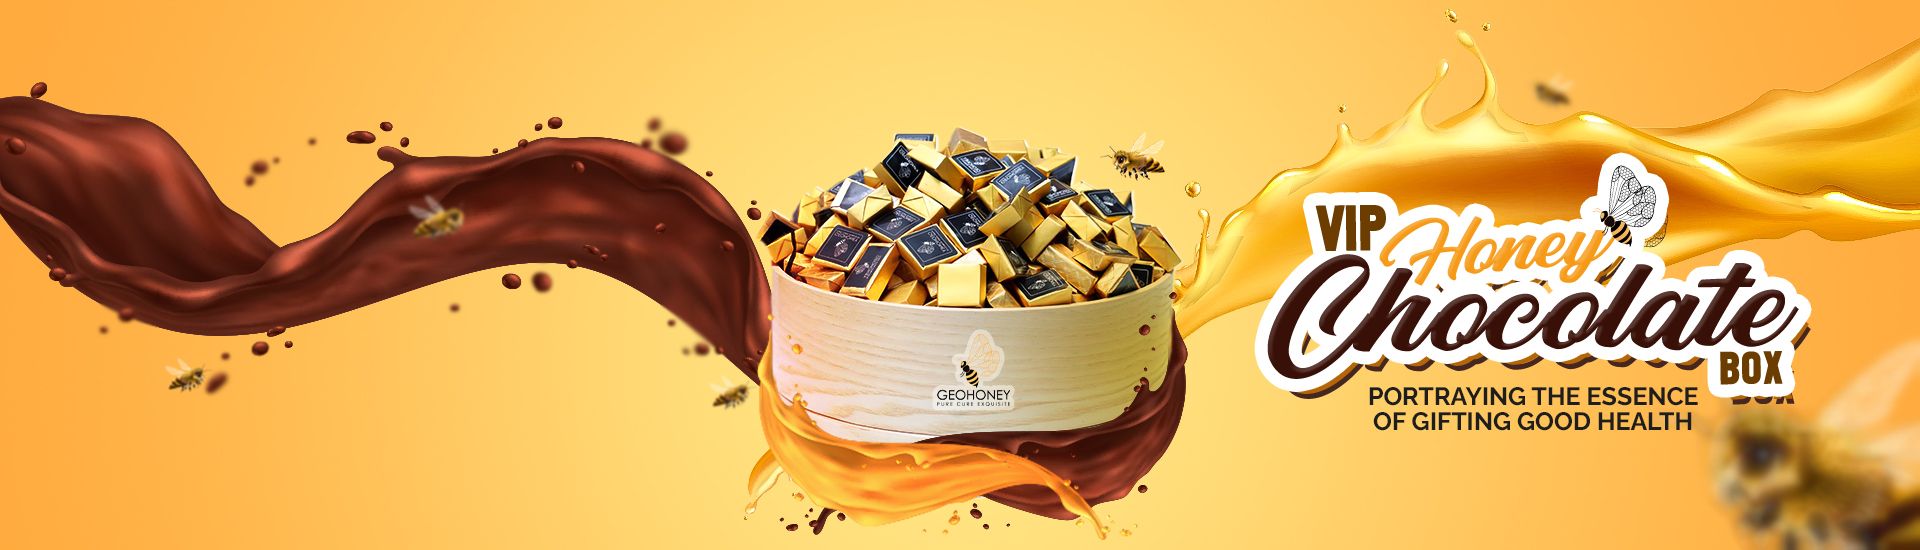 VIP Chocolate Honey